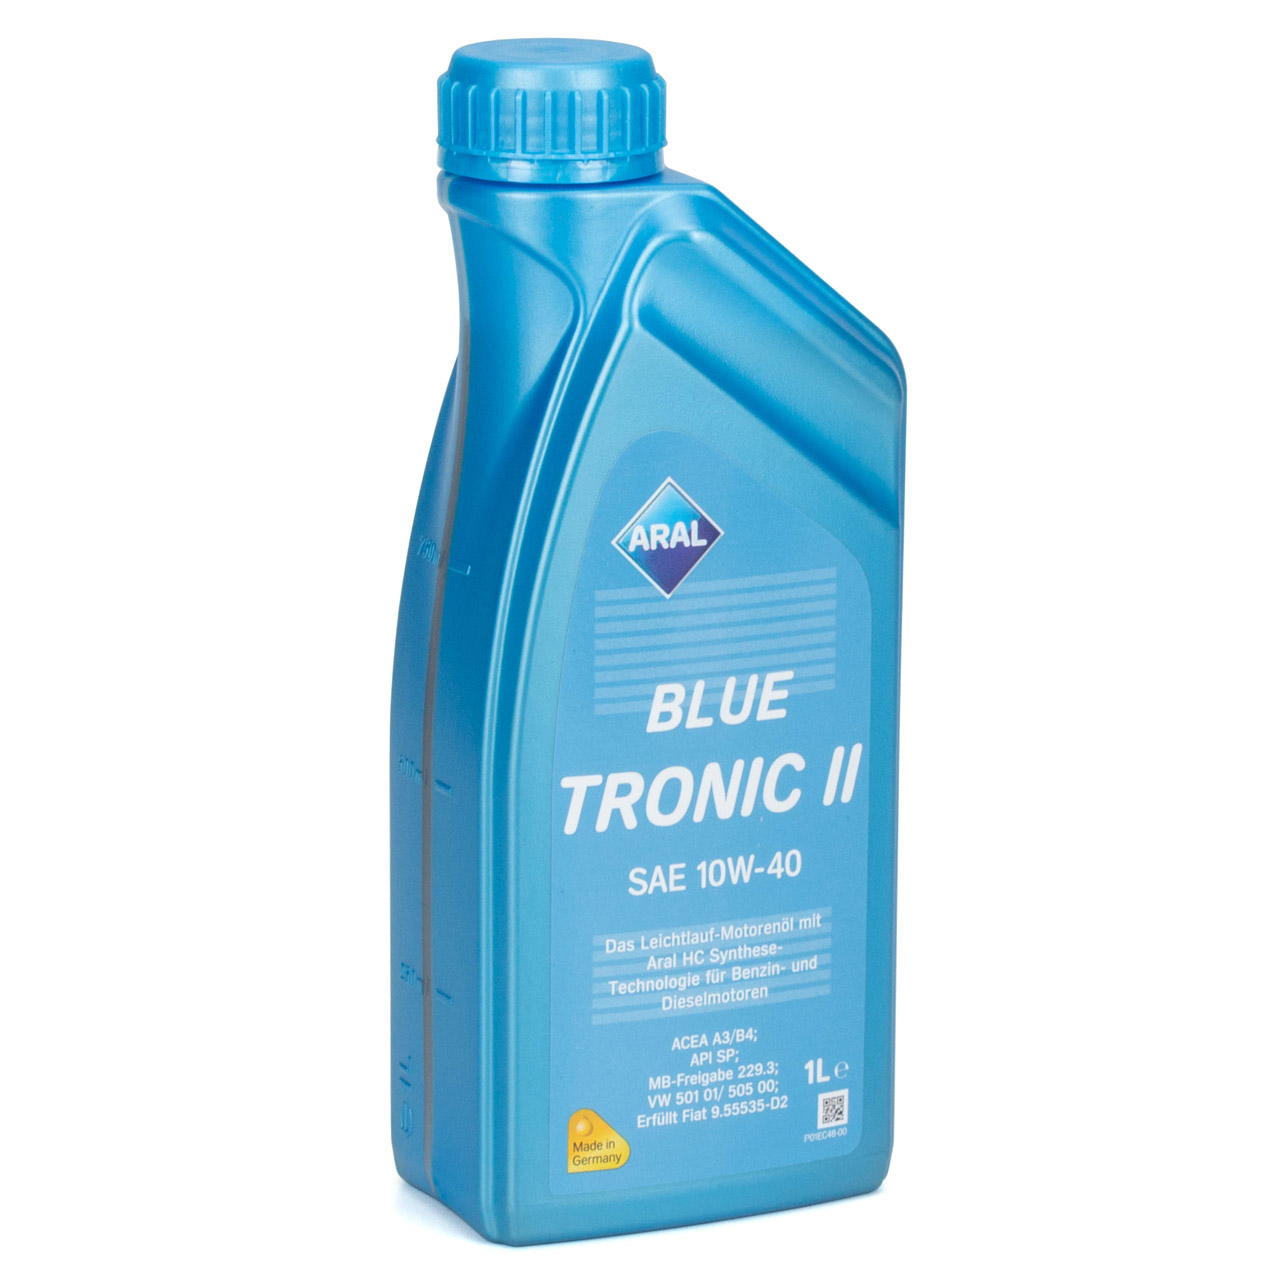 9L 9 Liter ARAL BLUE TRONIC II 10W-40 Motoröl Öl MB 229.3 VW 501.01/505.00 FIAT 9.55535-D2